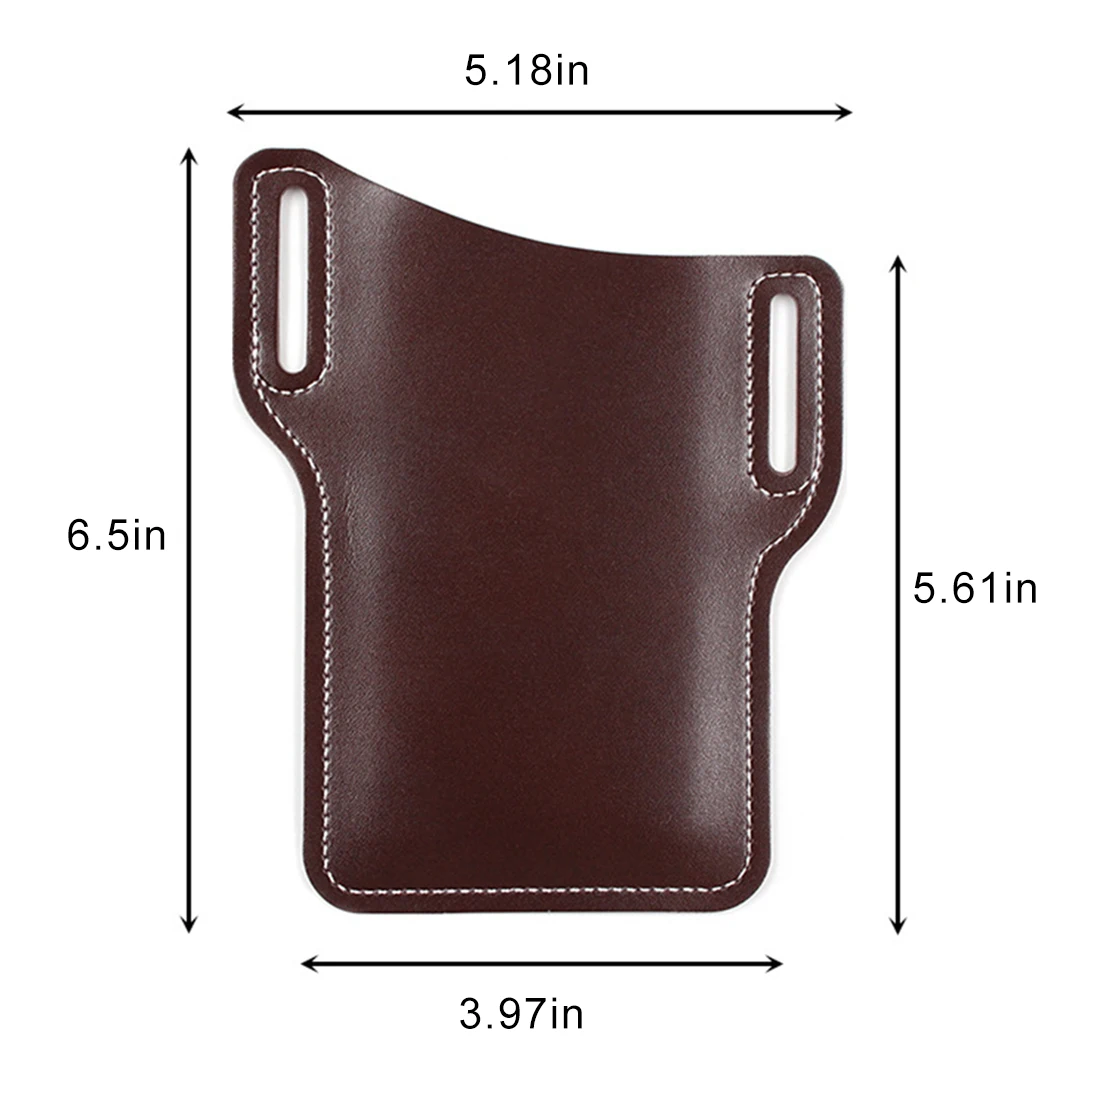 

Pocket Belt Clothing Bag Waist Bag Men Casual Design Leather Retro Fanny Pack Belt Bag Pouch For women Travle Phone Bag